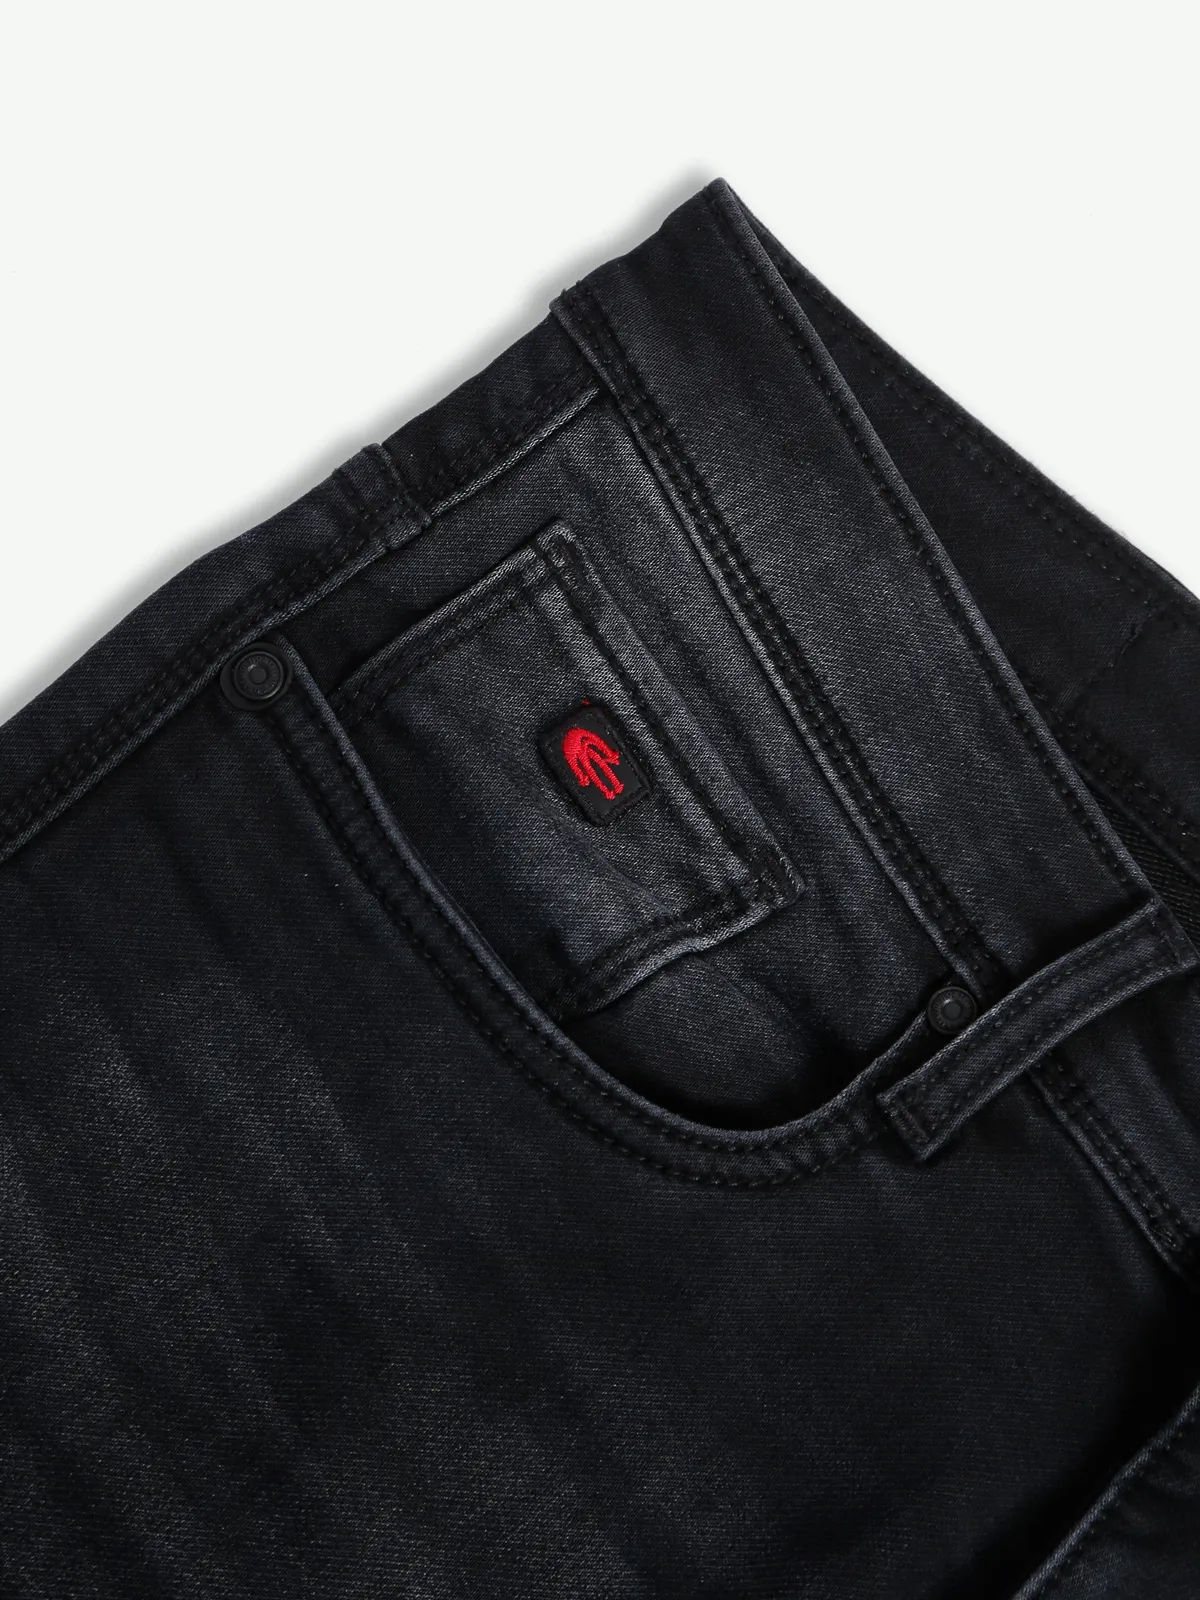 Nostrum slim fit washed jeans in black